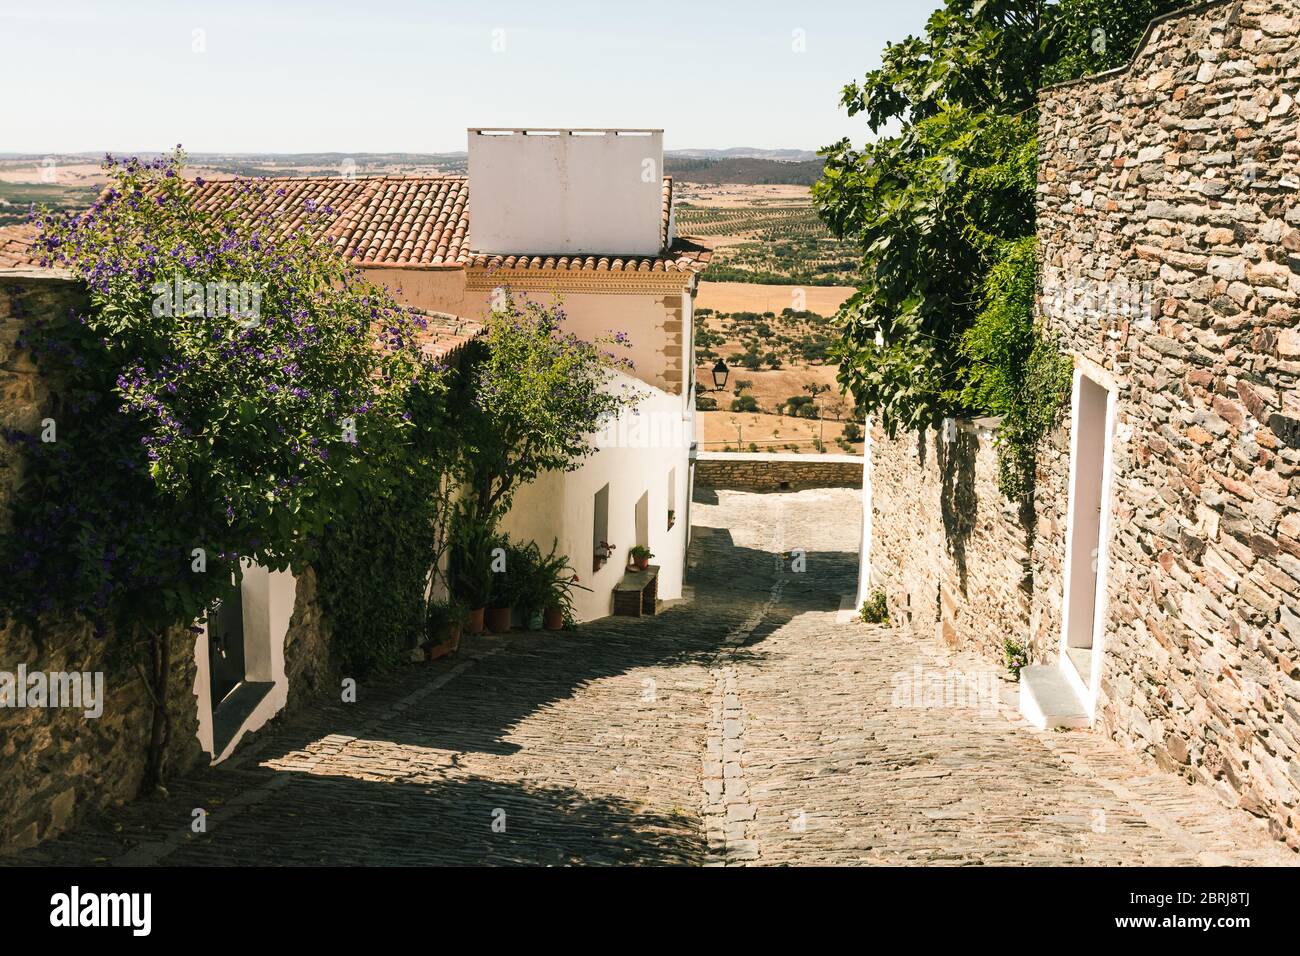 Straße in Monsaraz Dorf in Portugal, mit Pflanzen über den Wänden. Alte typische Häuser aus Alentejo, weiß und aus Schiefer. Reisen im Mittelmeerraum Stockfoto